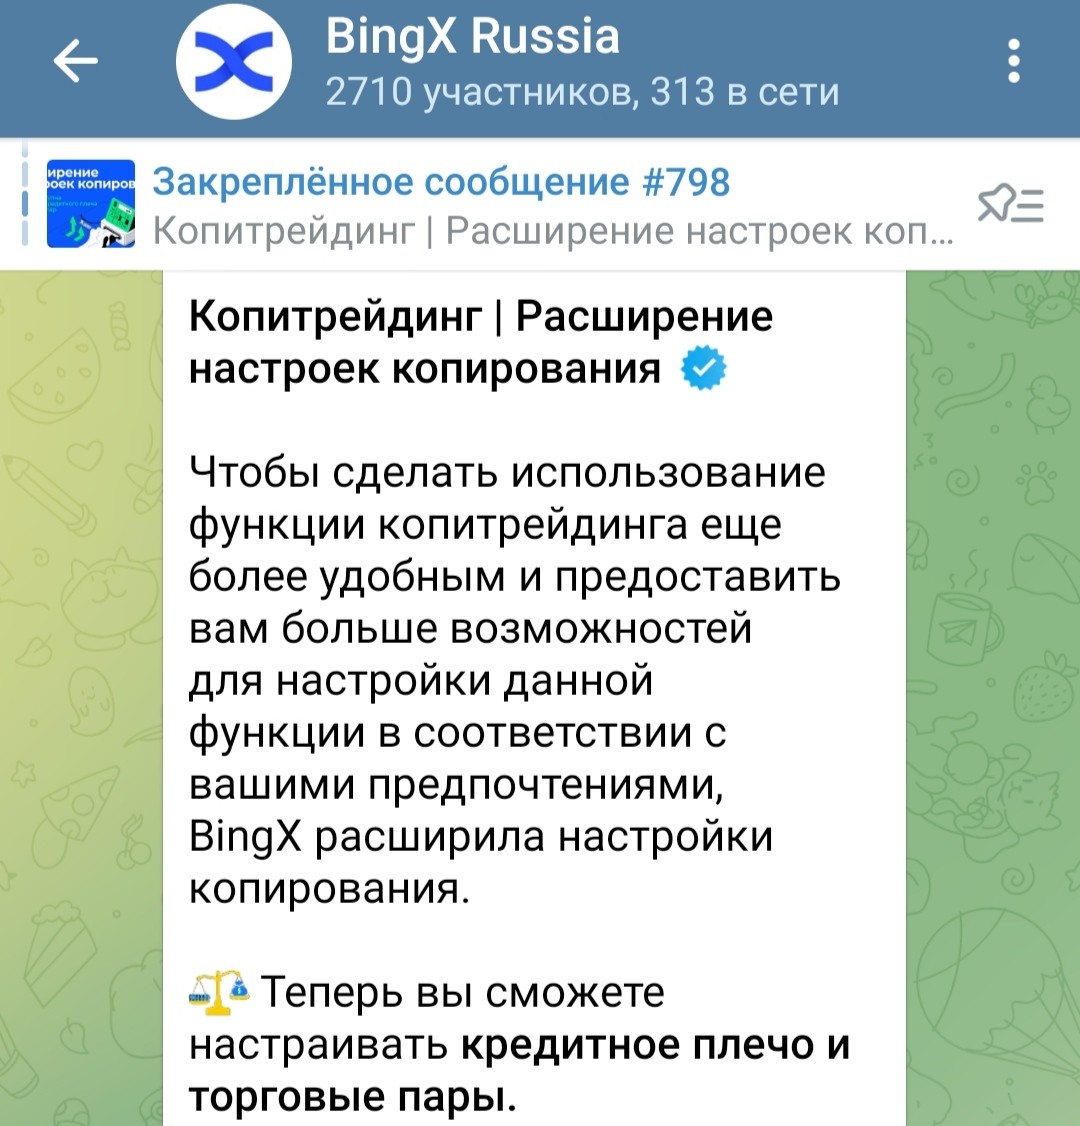 Телеграм BingX